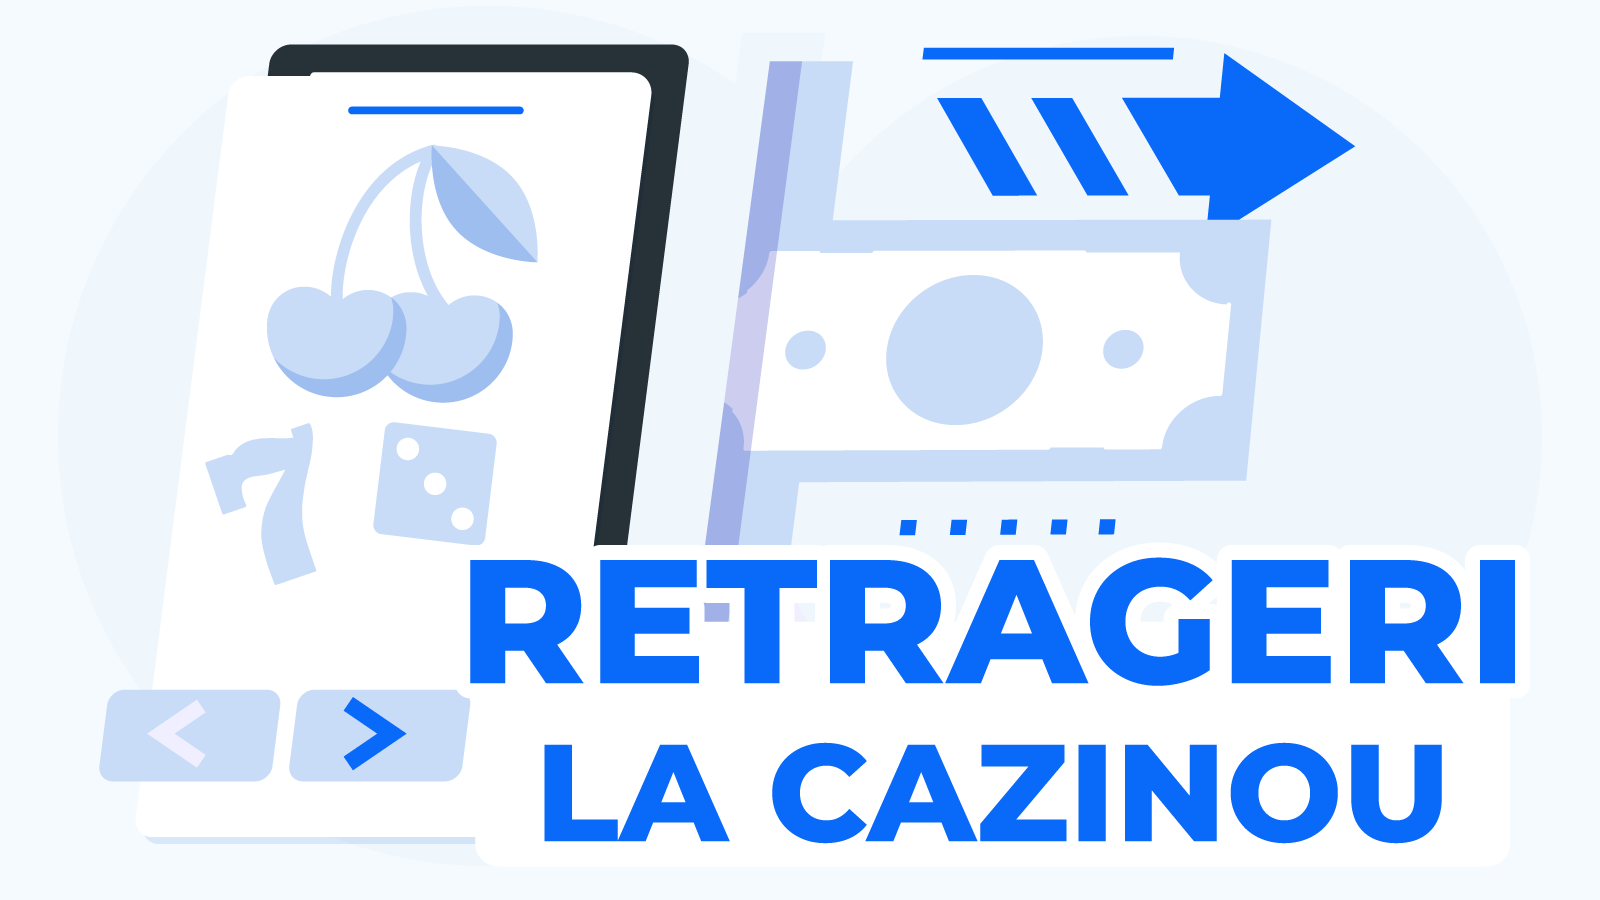 Cum Faci O Retragere La Cazino?